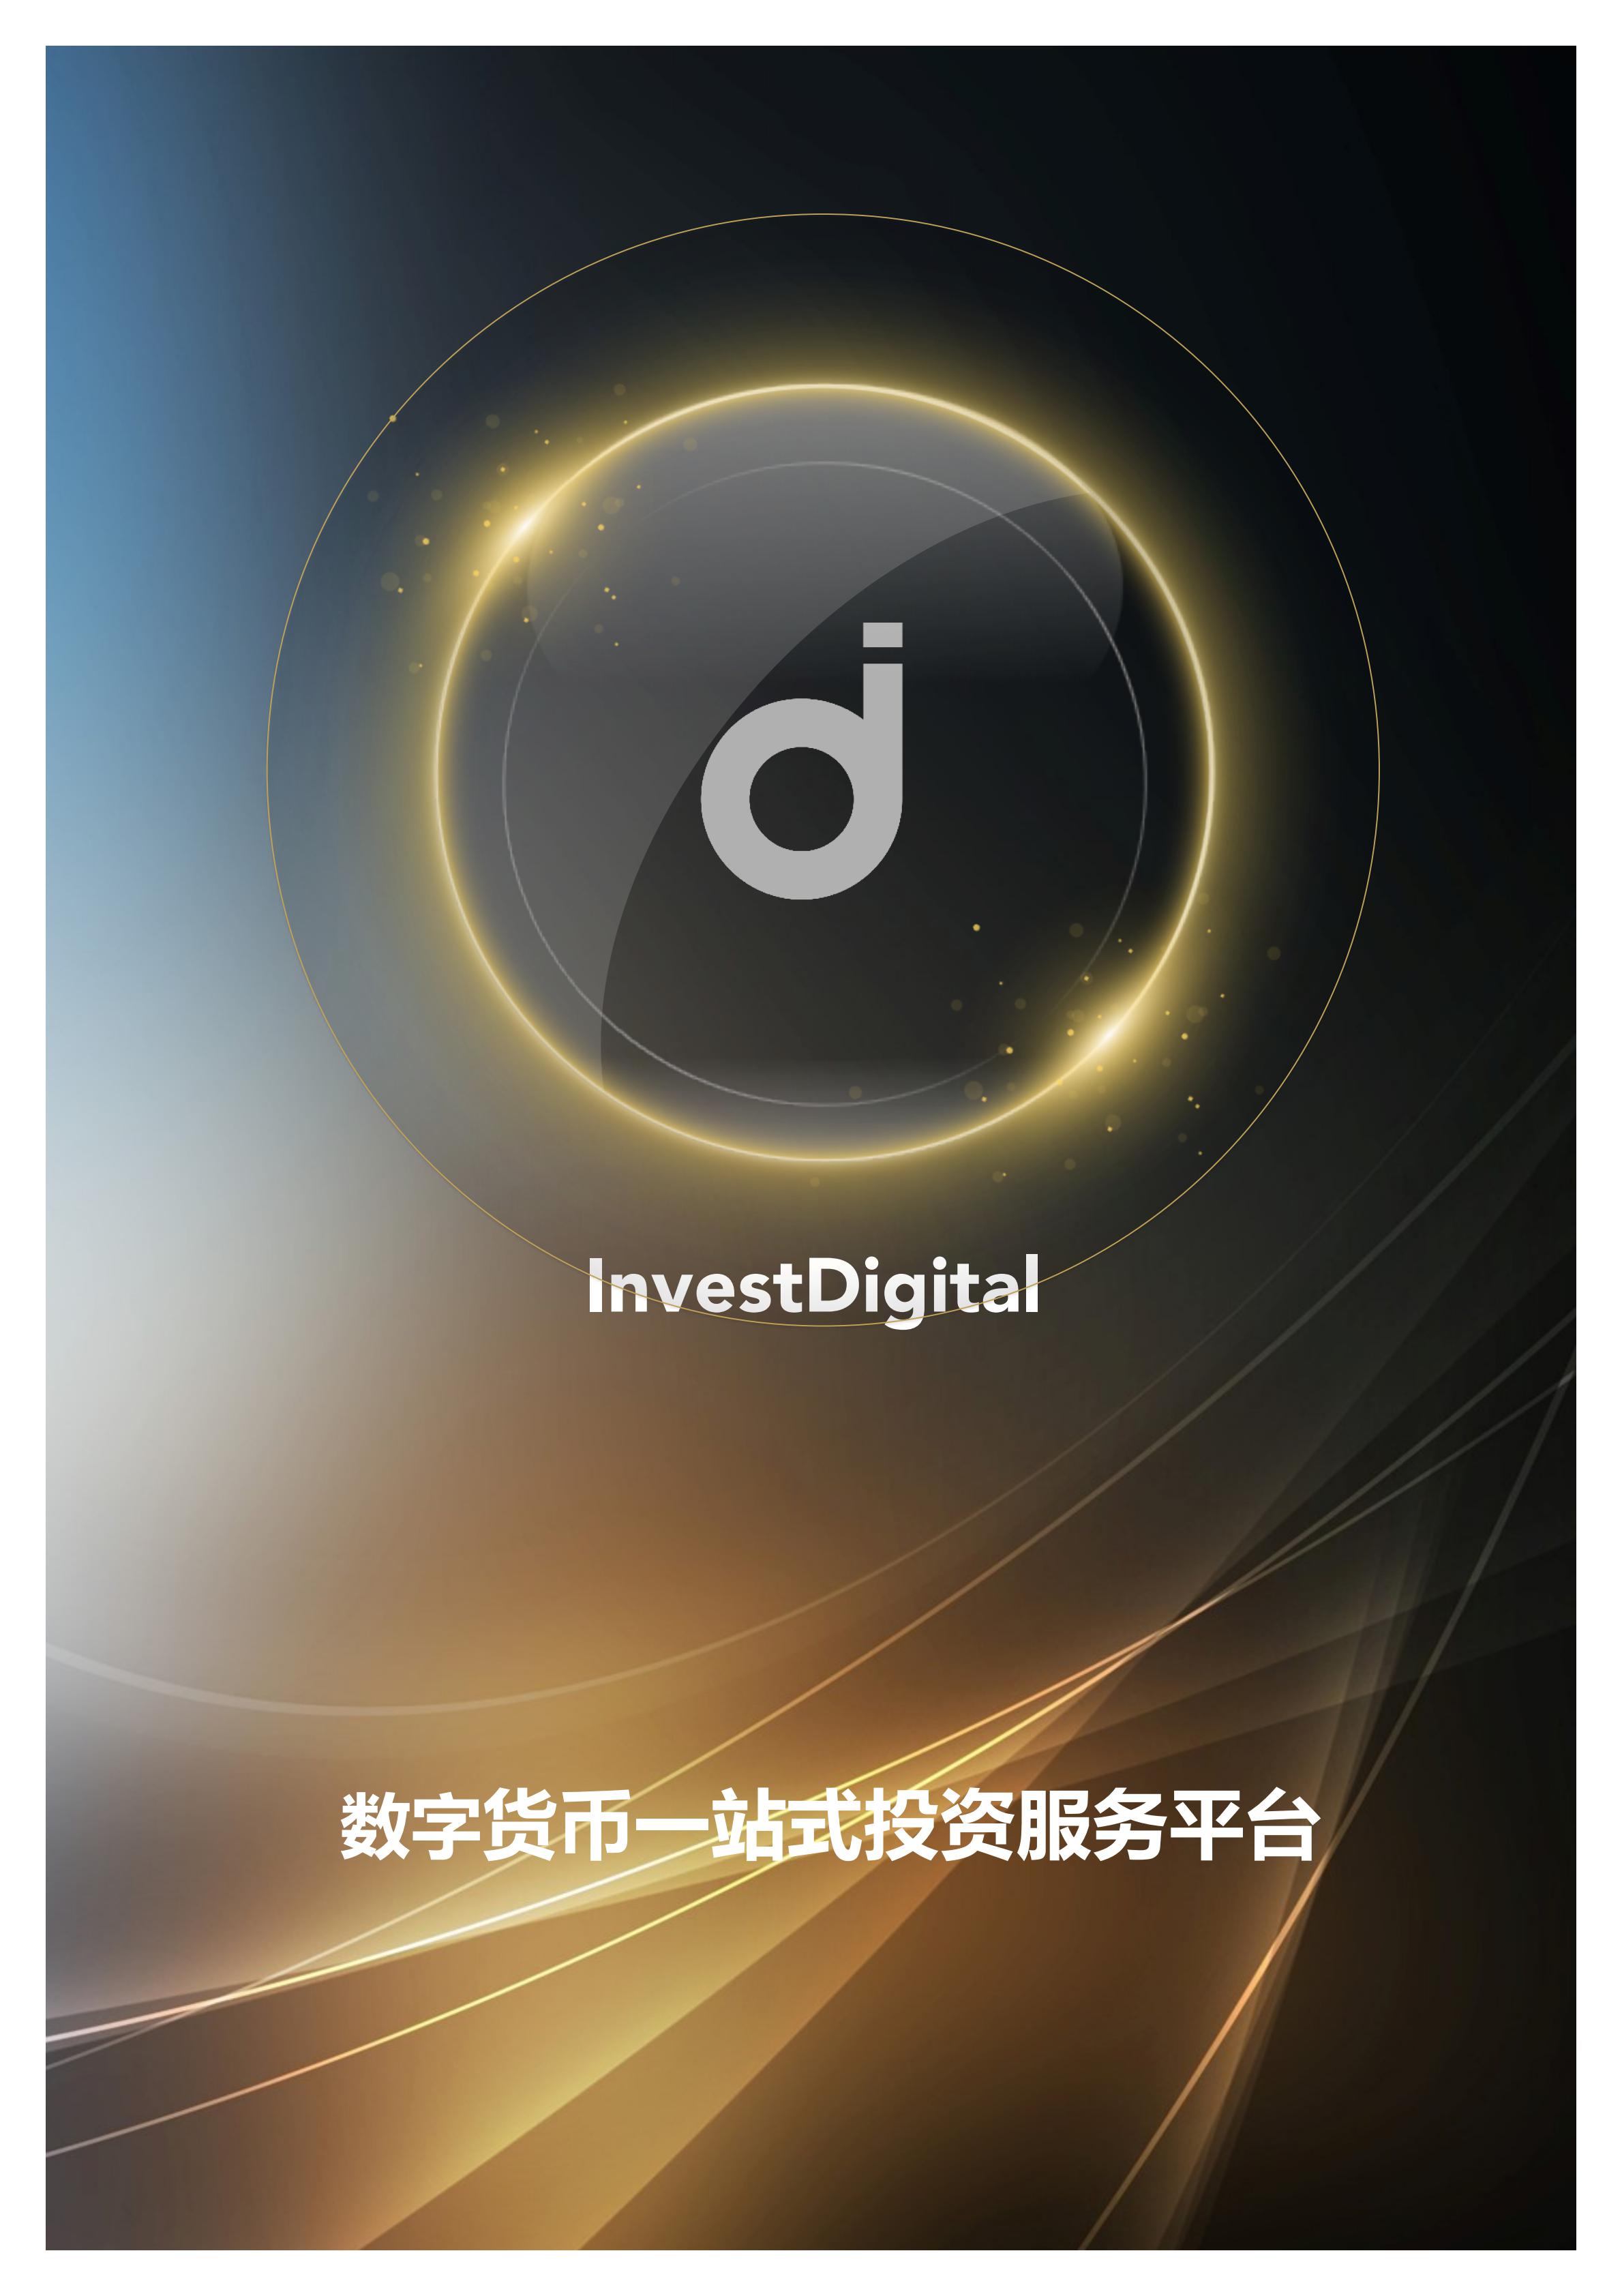 IDT_InvestDigital_Whitepaper_CN_00.jpg